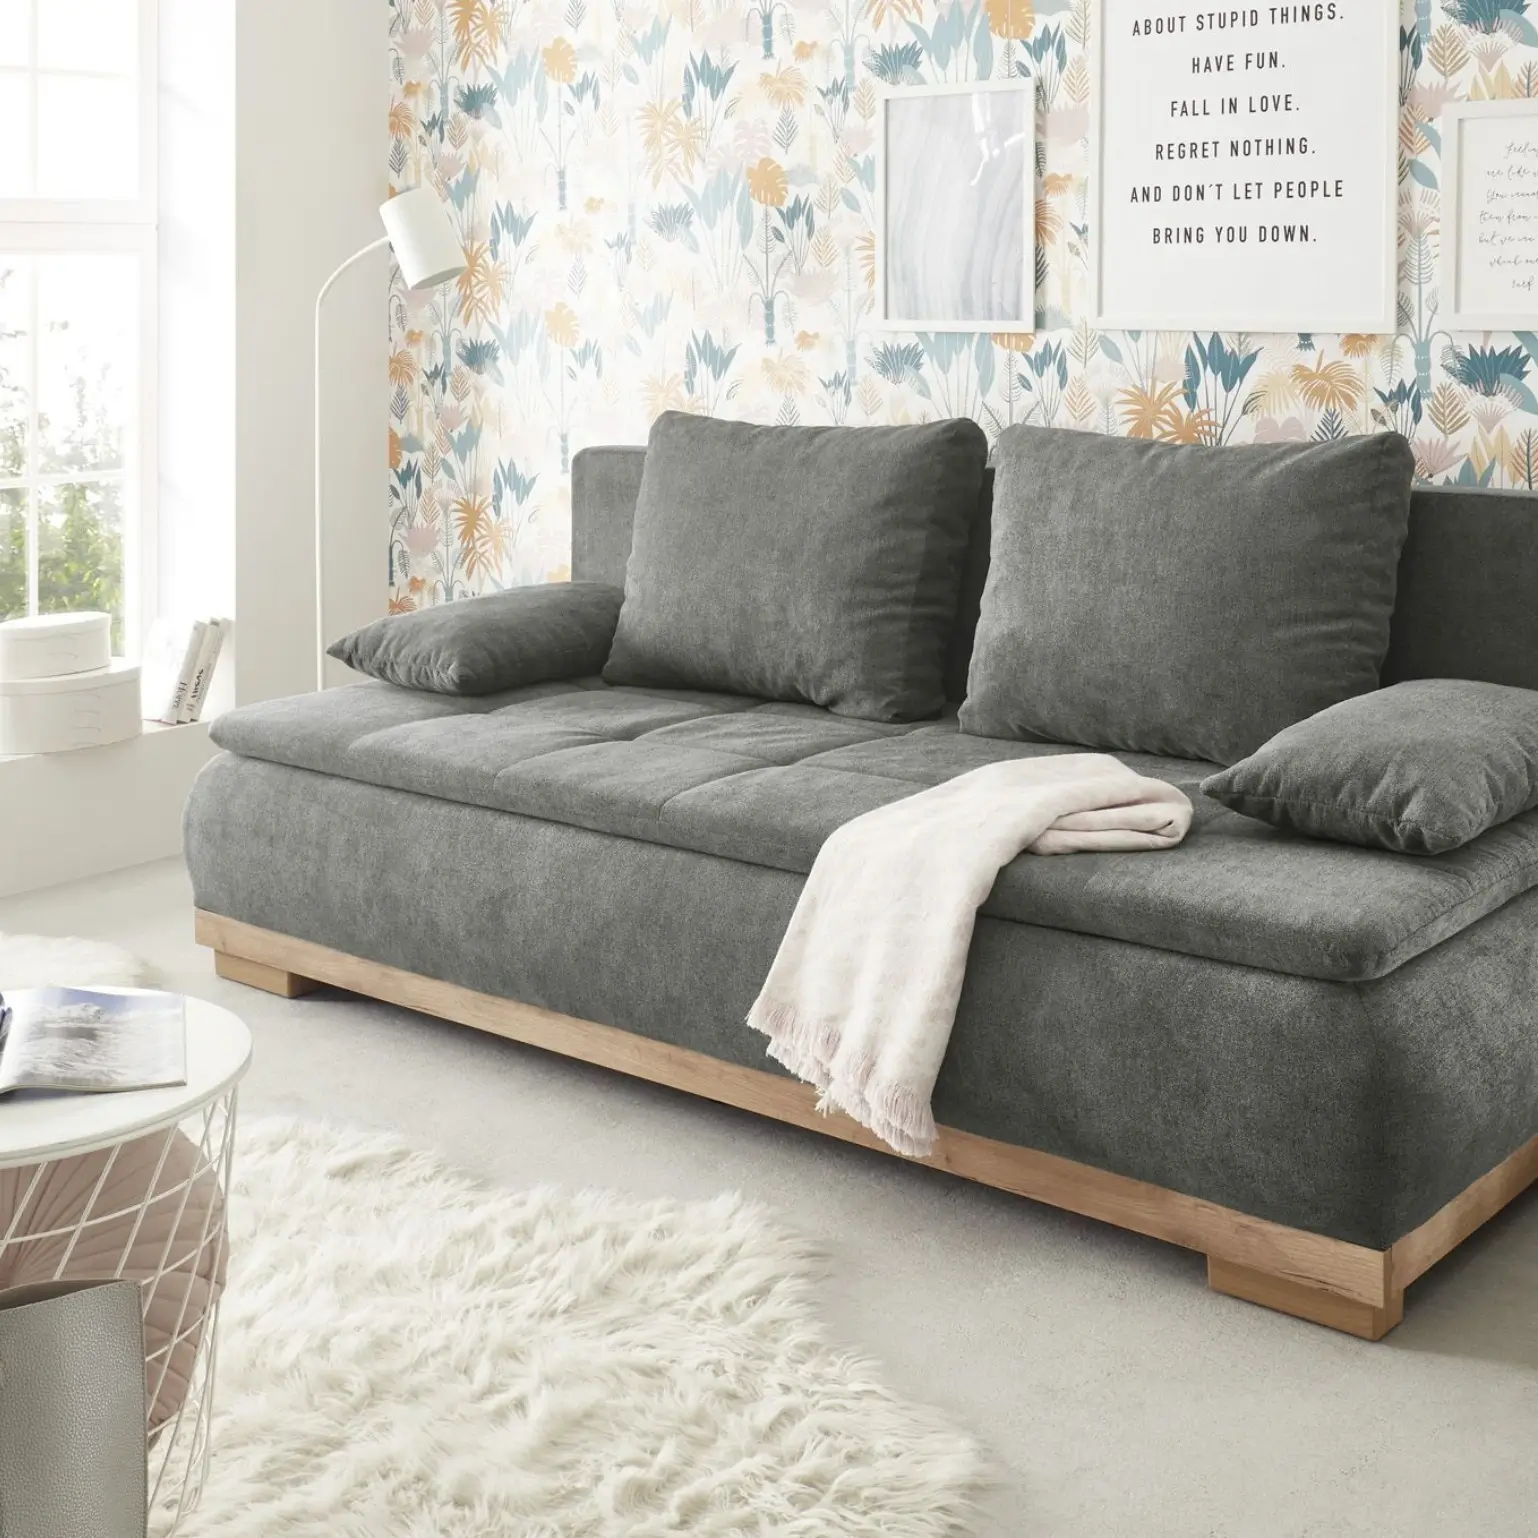 Canapé-lit gris MILA LUX.3DL avec rembourrage Bonell de qualité supérieure. L/H/P env. 208/93/105 cm